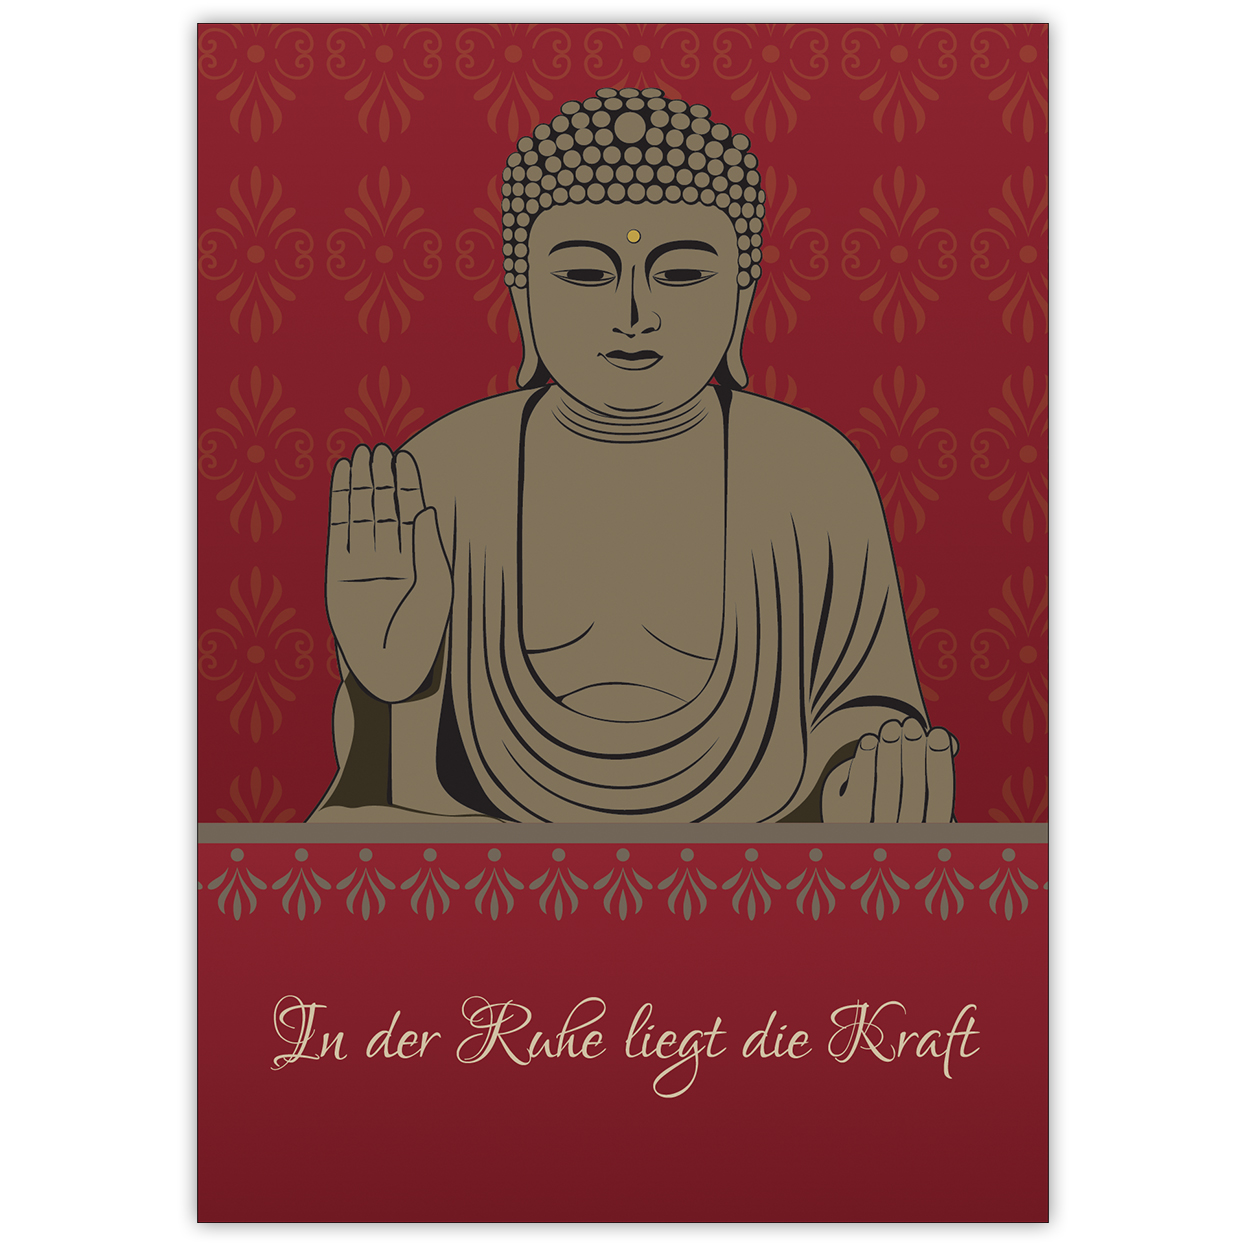 Klassische Spruchkarte: "In der Ruhe liegt die Kraft" mit schönem Buddha auf rot